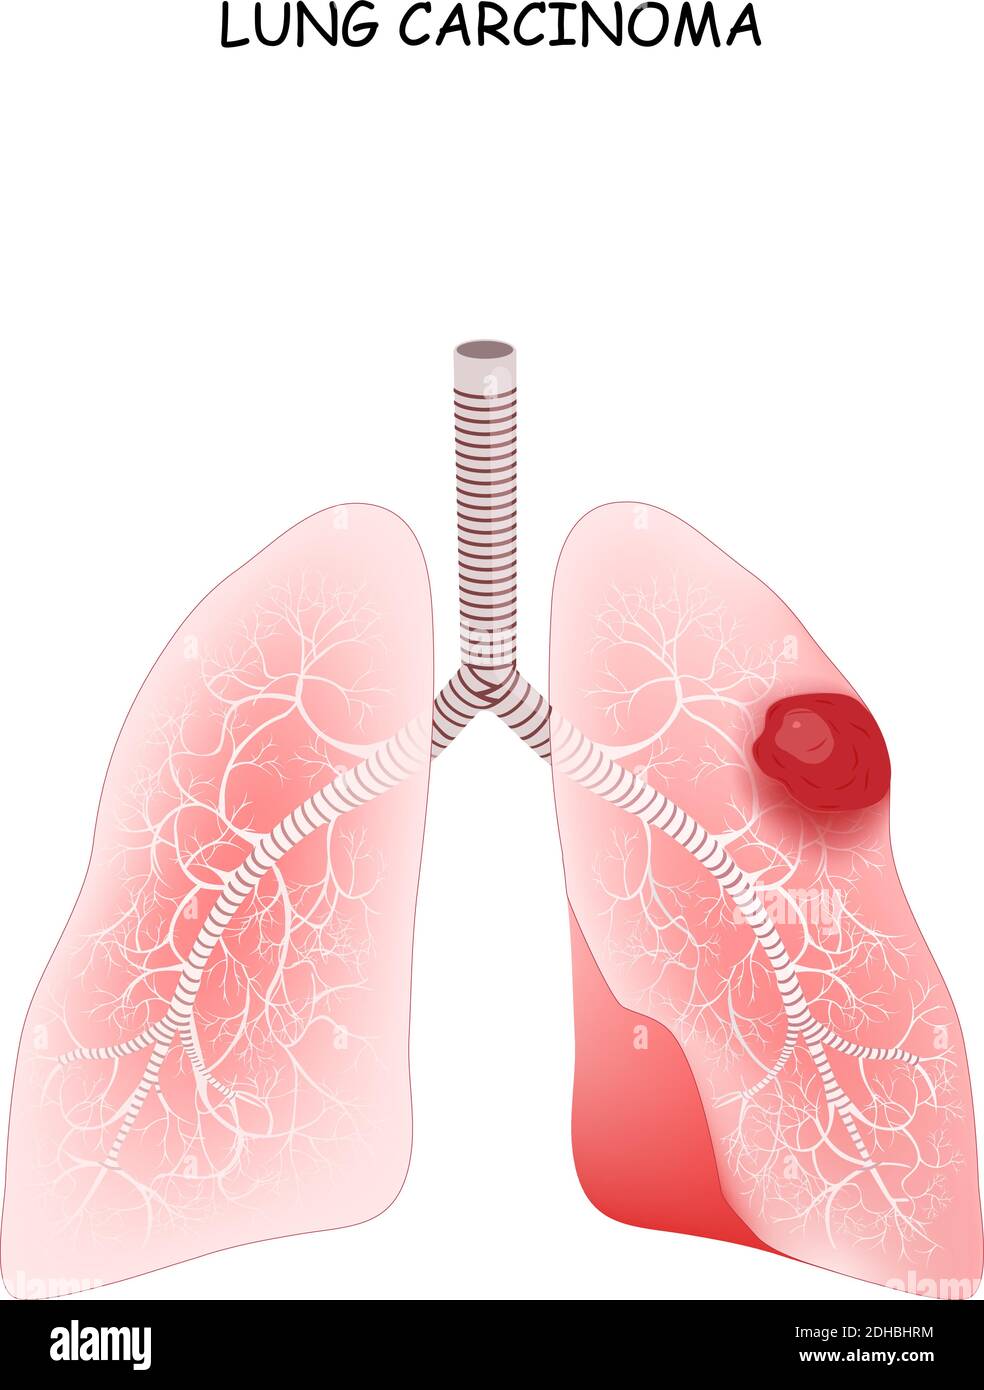 Cancer du poumon. Carcinome est une tumeur maligne du poumon. Illustration vectorielle à usage médical Illustration de Vecteur